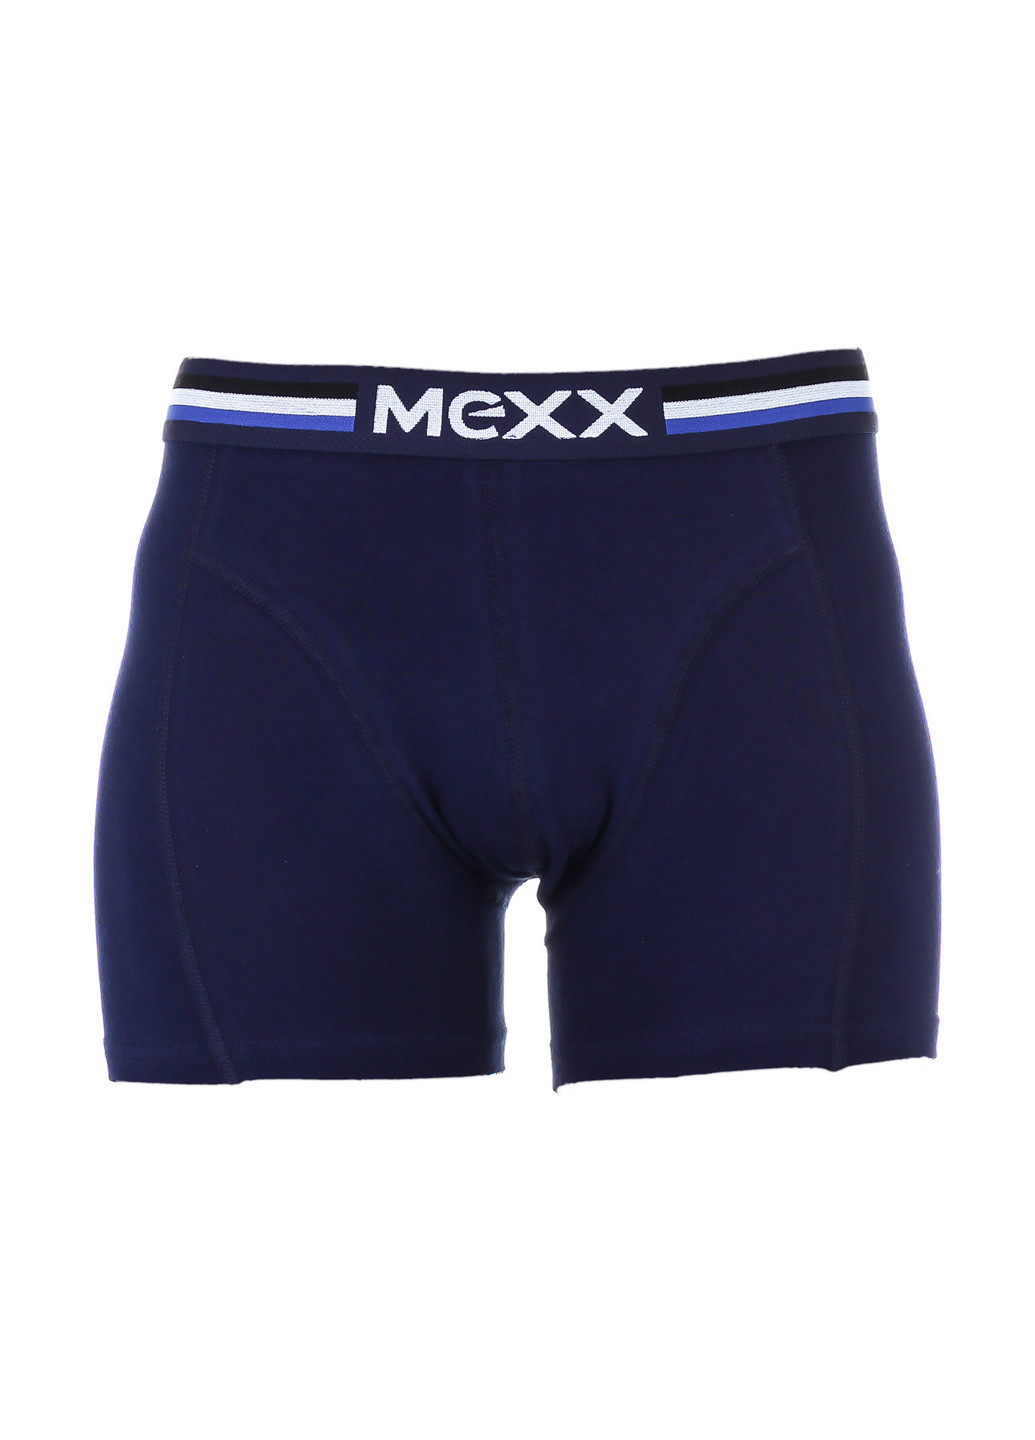 Труси Mexx боксери логотипи темно-сині повсякденні